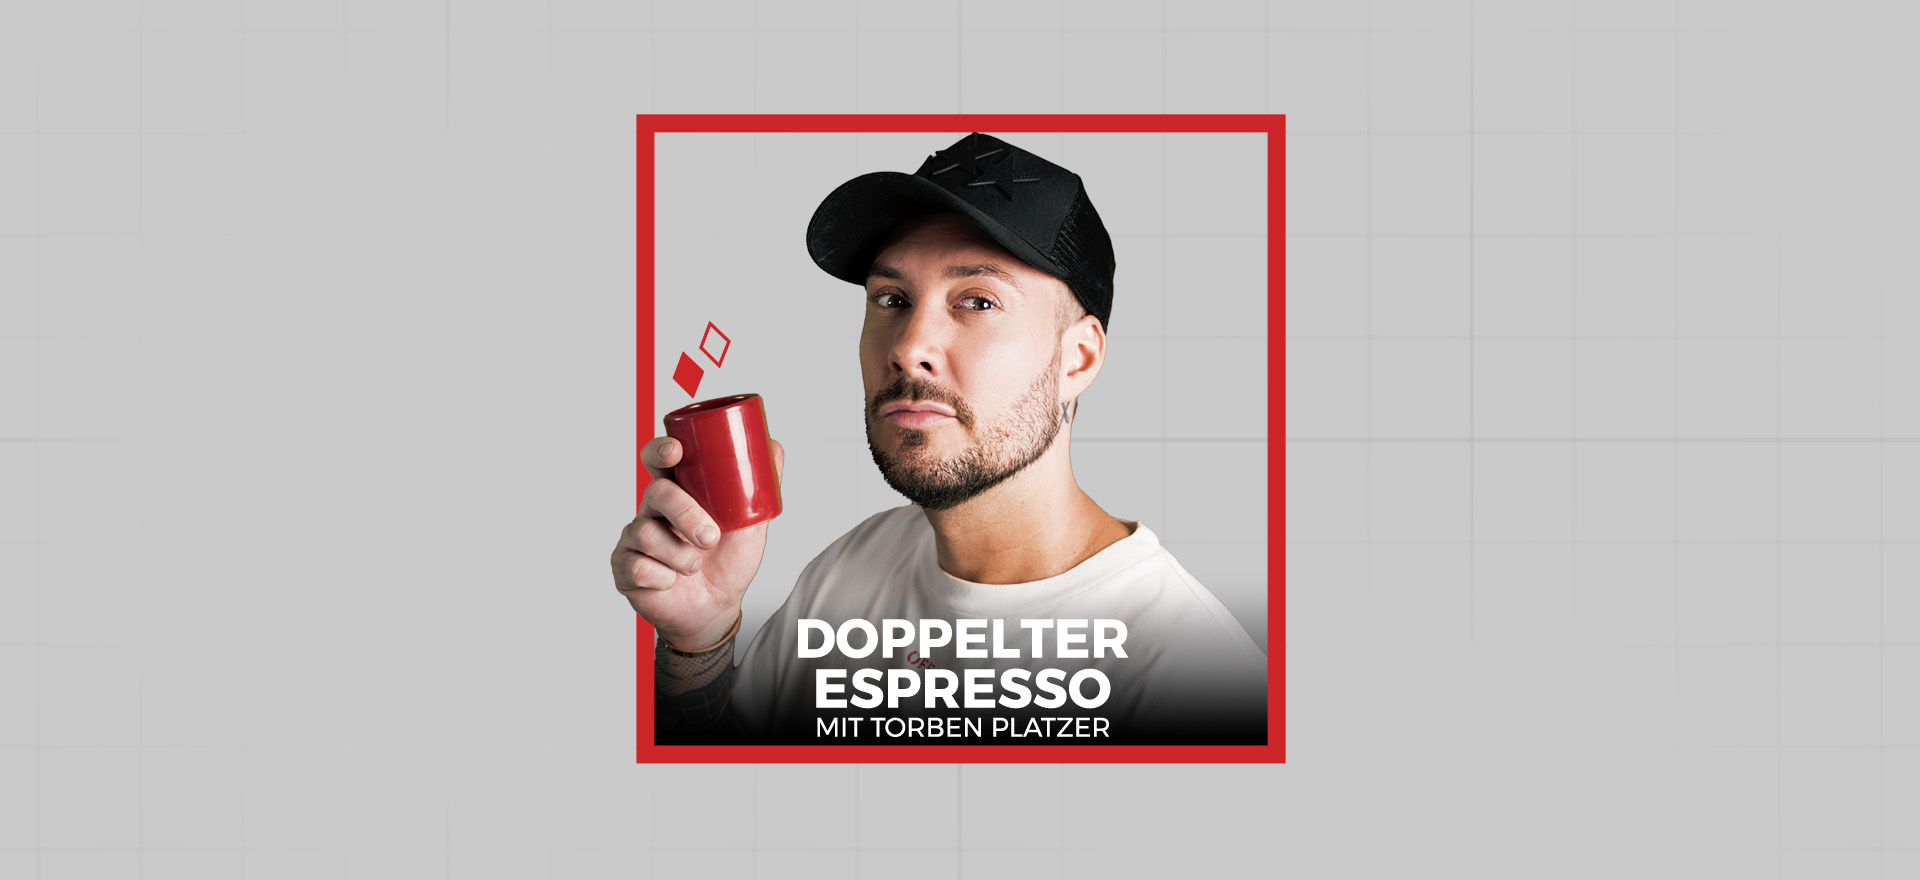 Doppelter Espresso mit Torben Platzer